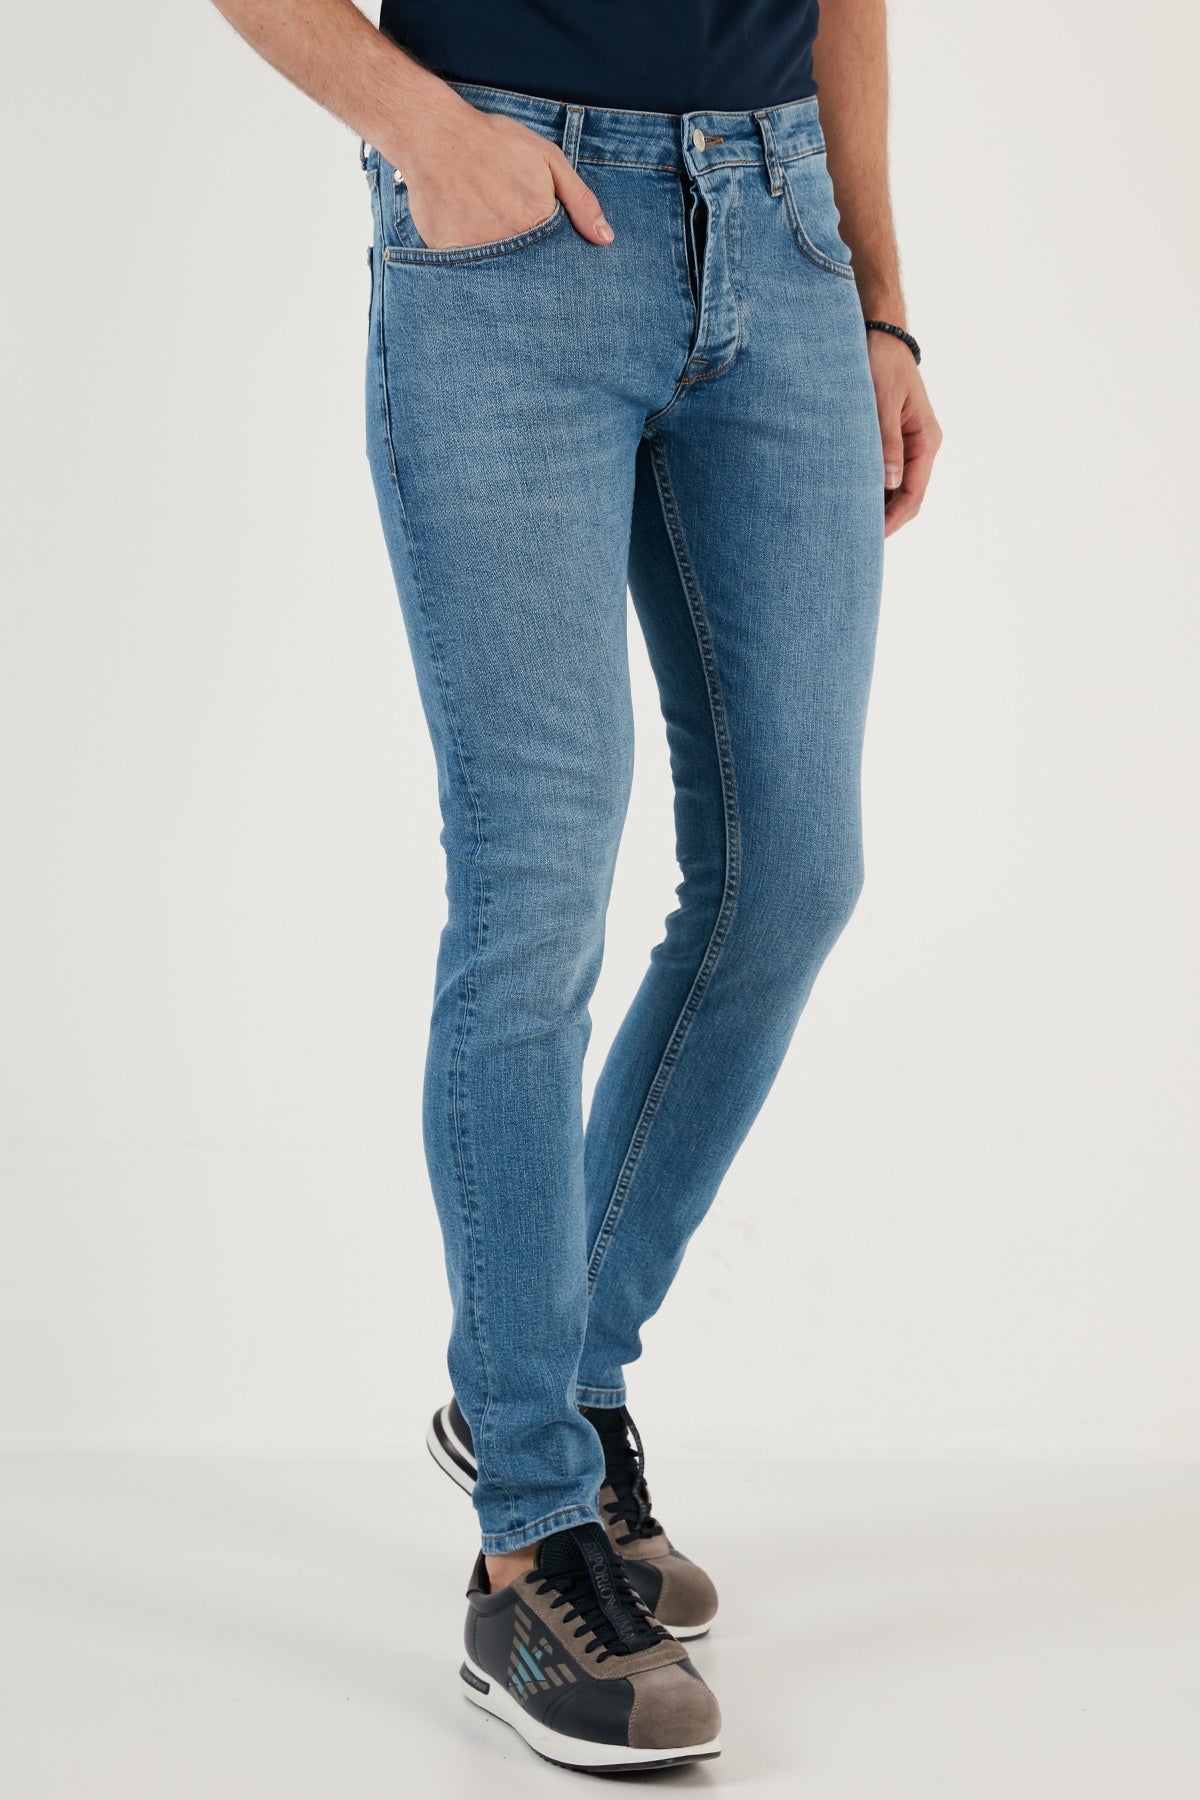 Buratti Pamuklu Normal Bel Slim Fit Dar Paça Jeans Erkek Kot Pantolon 1122J651NAPOLI MAVİ